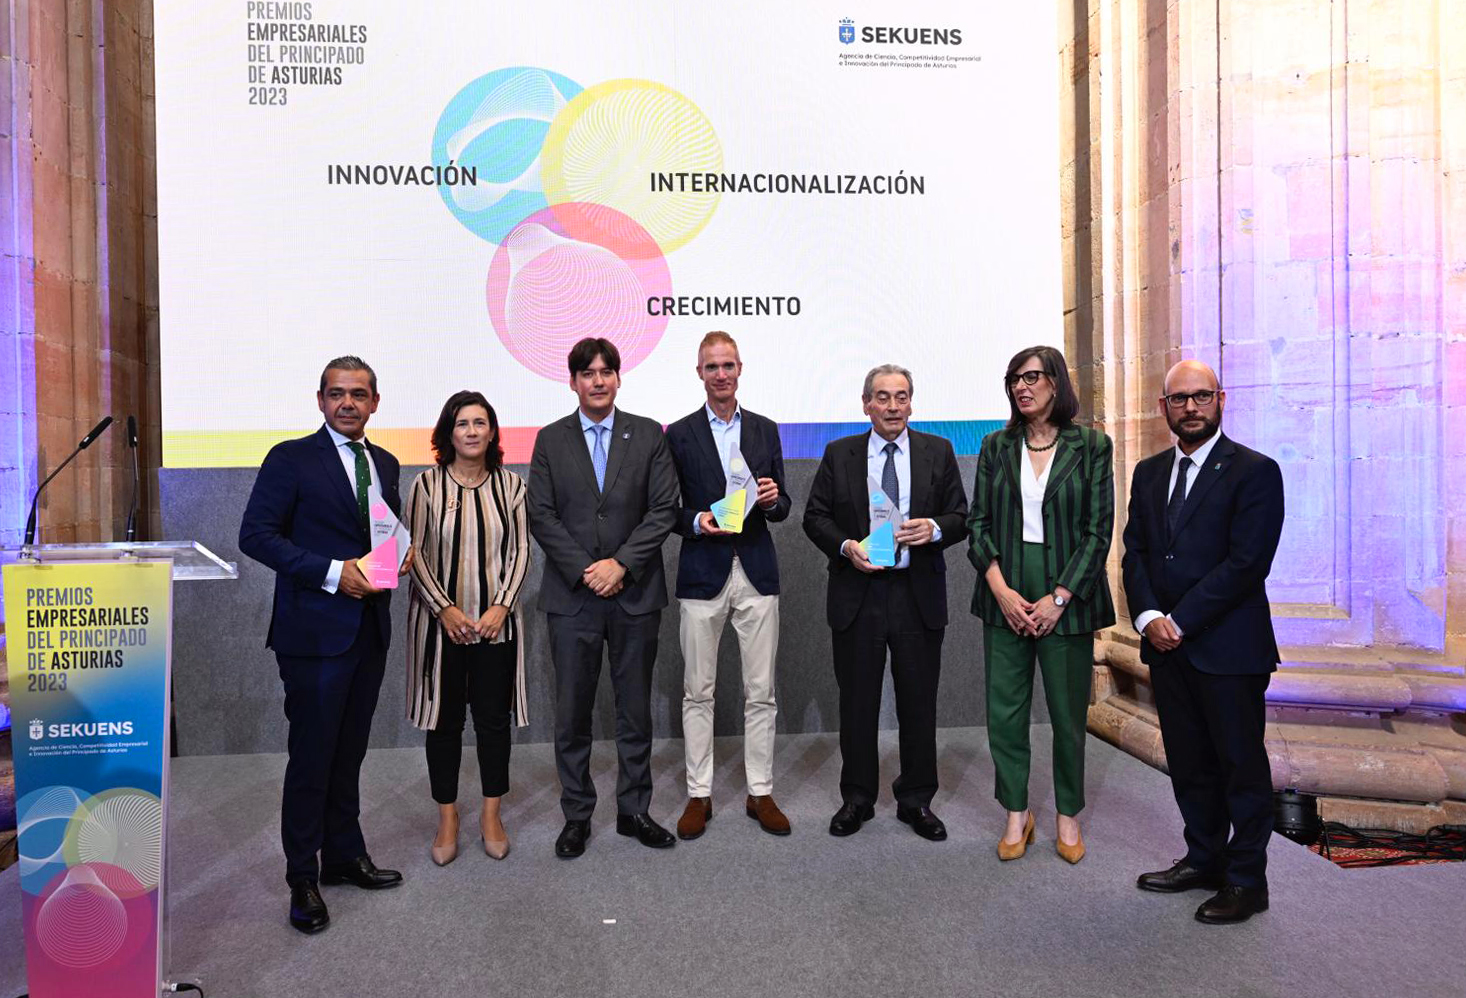 Imagen - La Agencia Sekuens entrega a TSK, Capsa y Aleastur los Premios Empresariales del Principado de Asturias 2023